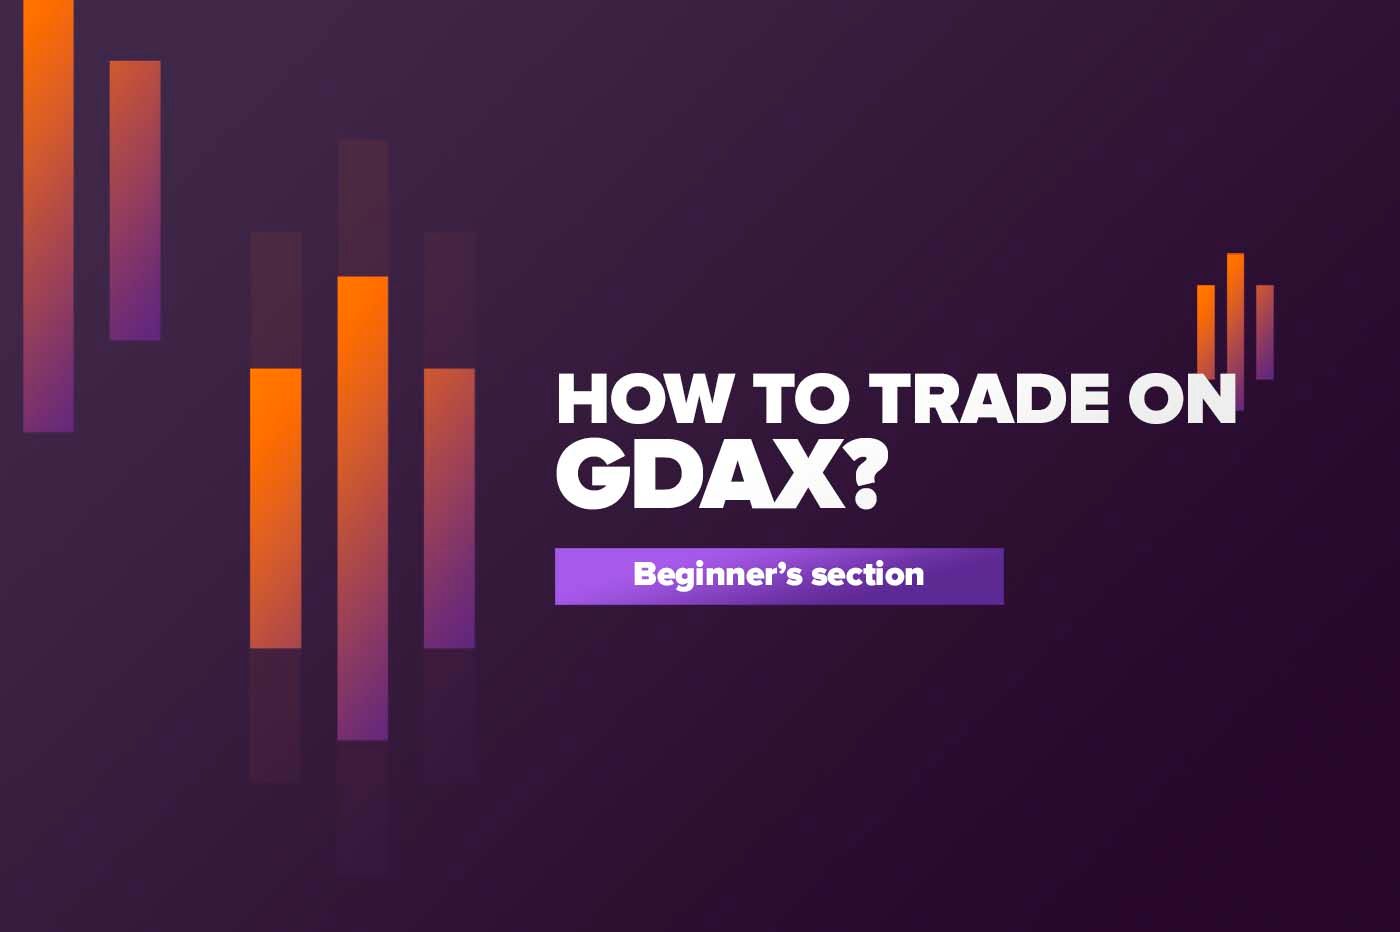 Article Как торговать на GDAX?